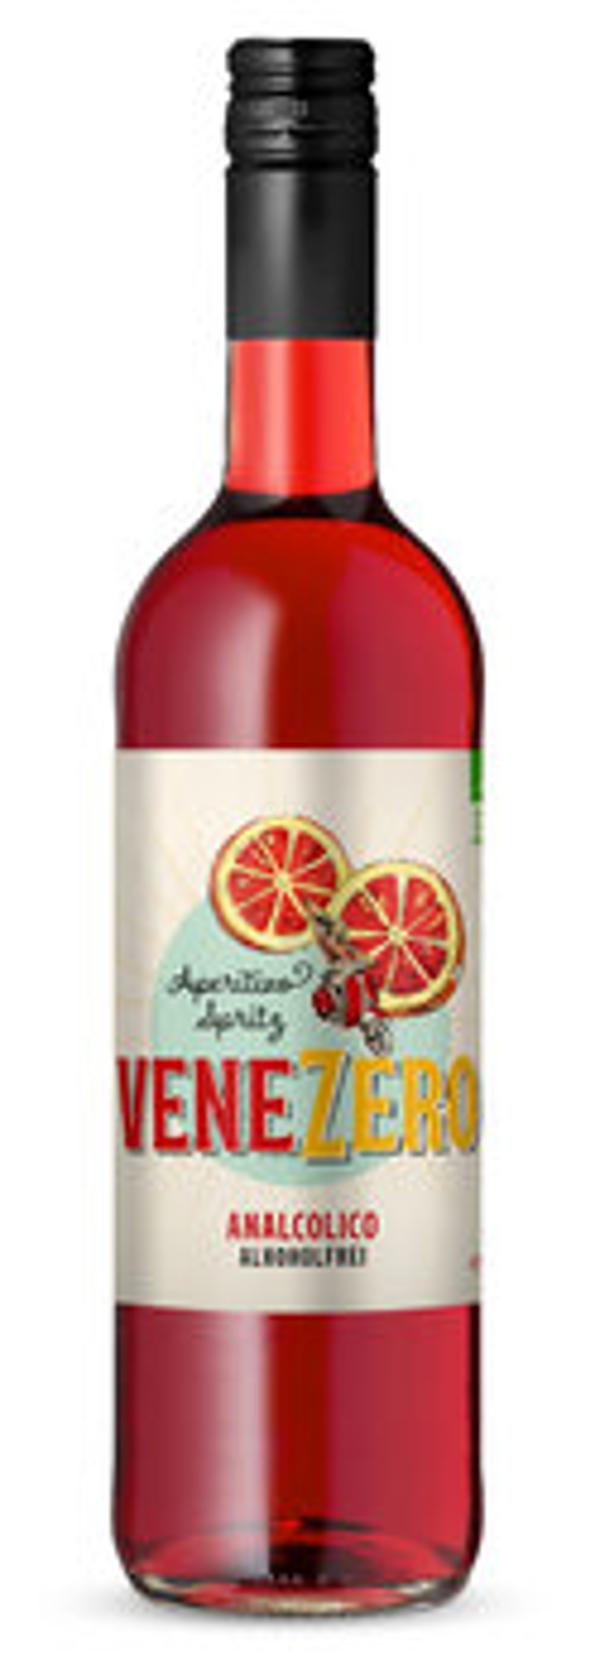 Produktfoto zu Venezero Aperitivo Spritz, Alkoholfrei